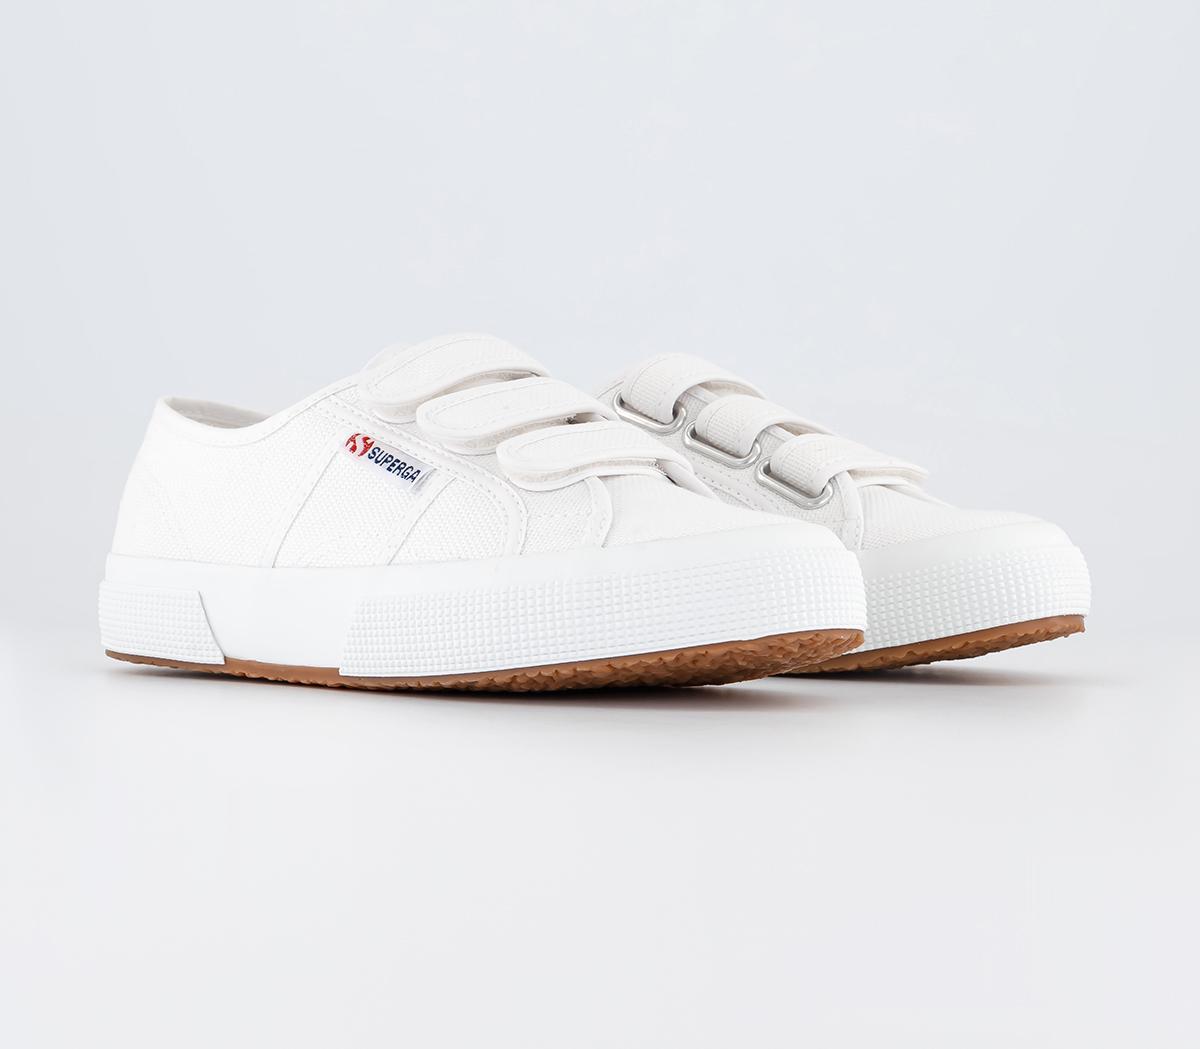 Superga Womens 2750 Strap Shoes White, 3.5